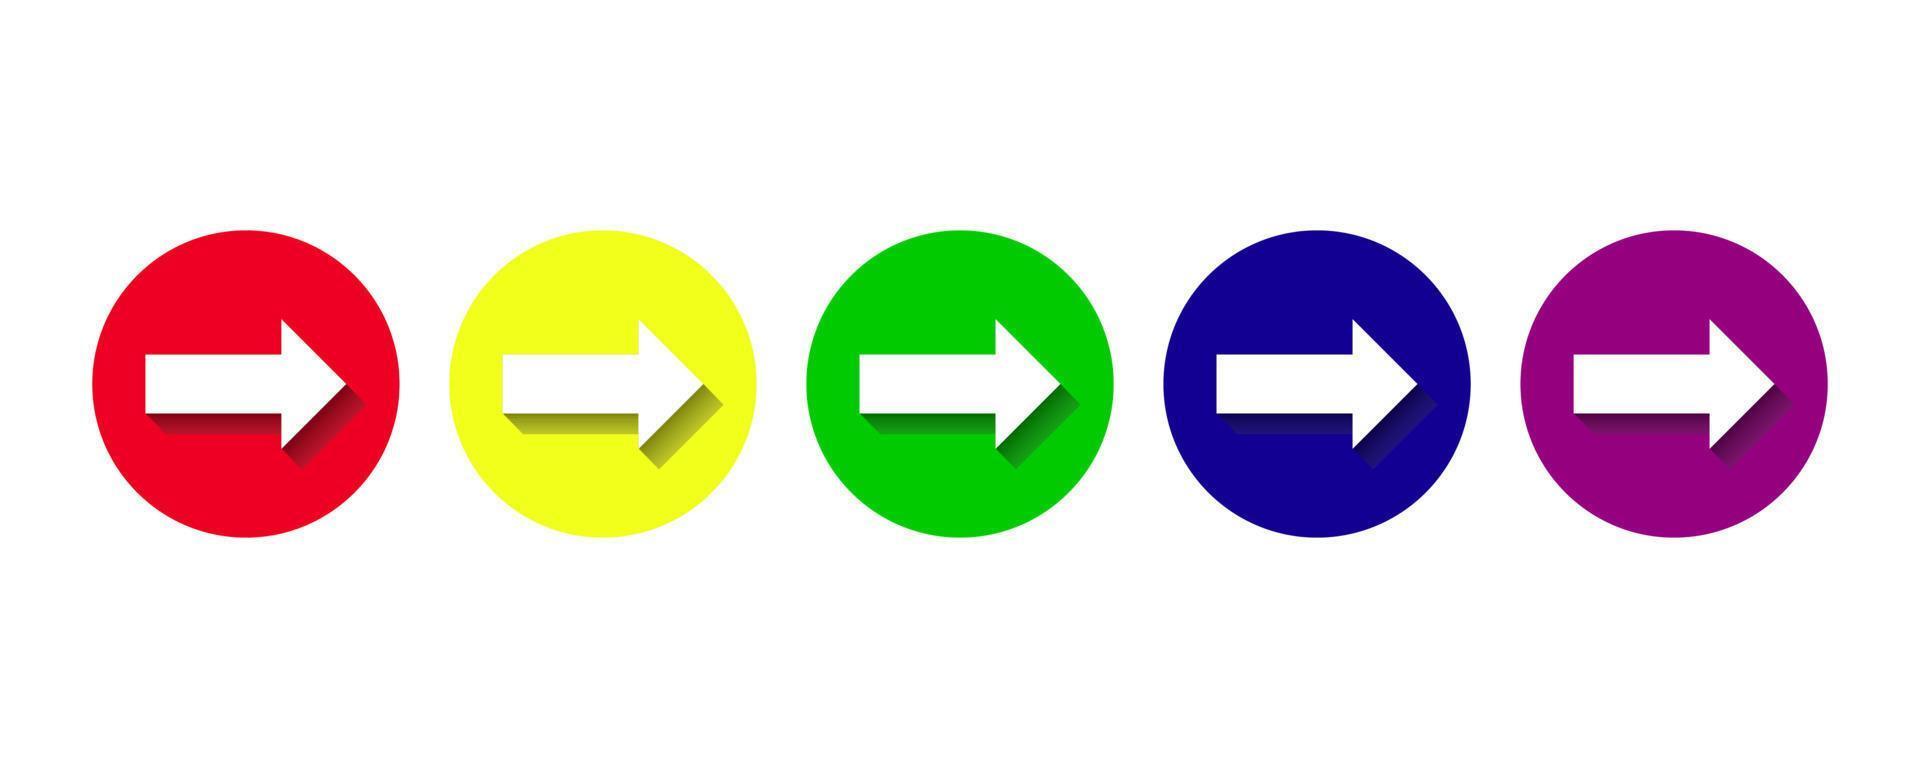 farbige Ikonen von Pfeilen in einem Kreis. Reihe von farbigen Pfeilen. stilvolle flache pfeile mit schatten. Vektorgrafik-Elemente. Vektor-Illustration isoliert auf weißem Hintergrund vektor